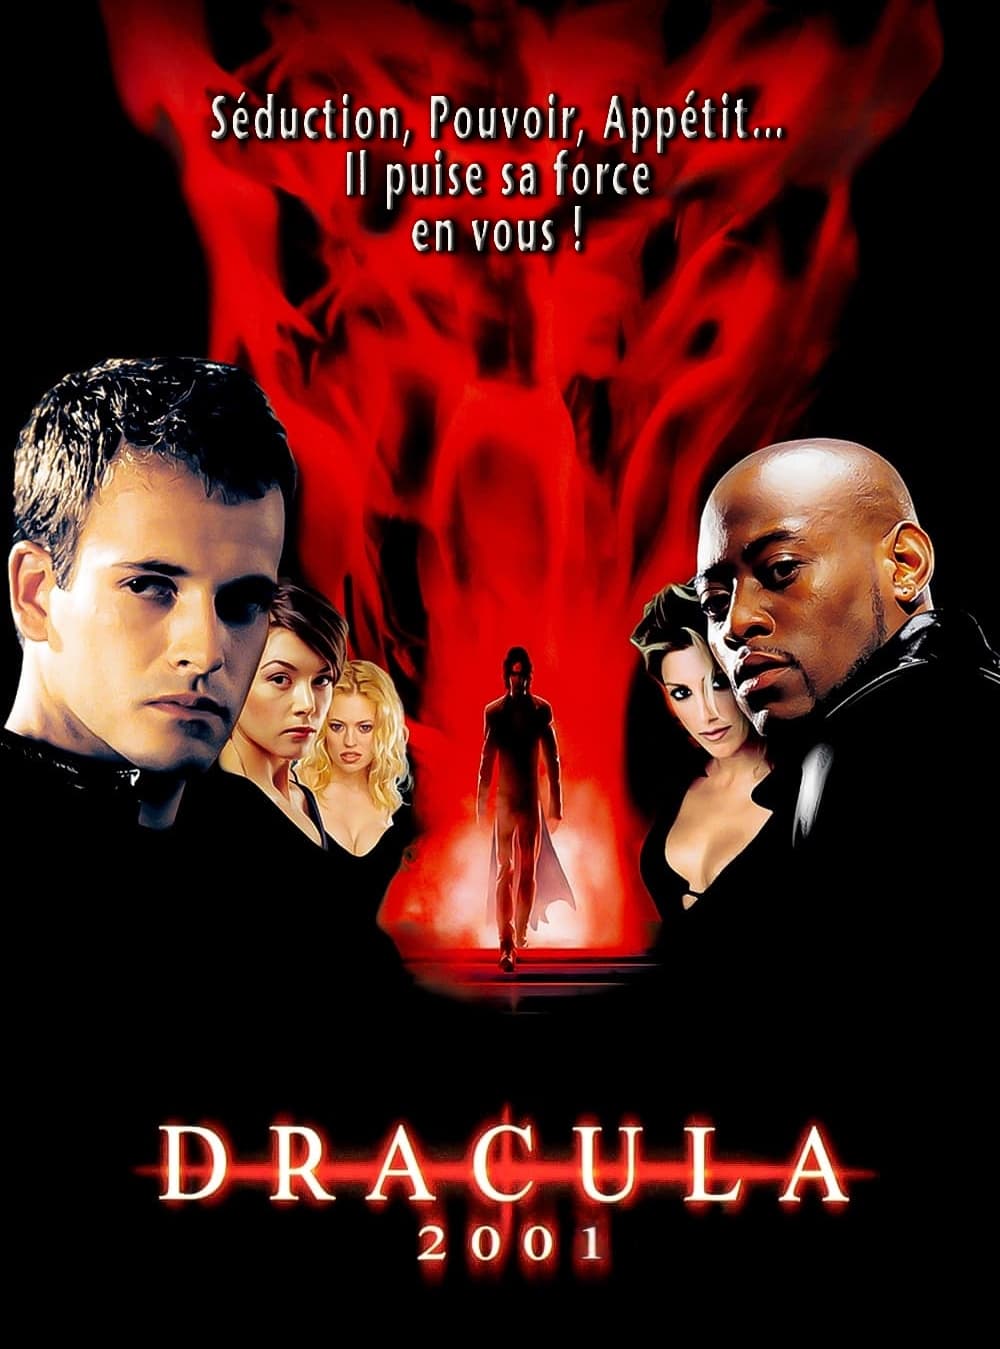 Dracula 2001 est-il disponible sur Netflix ou autre ?